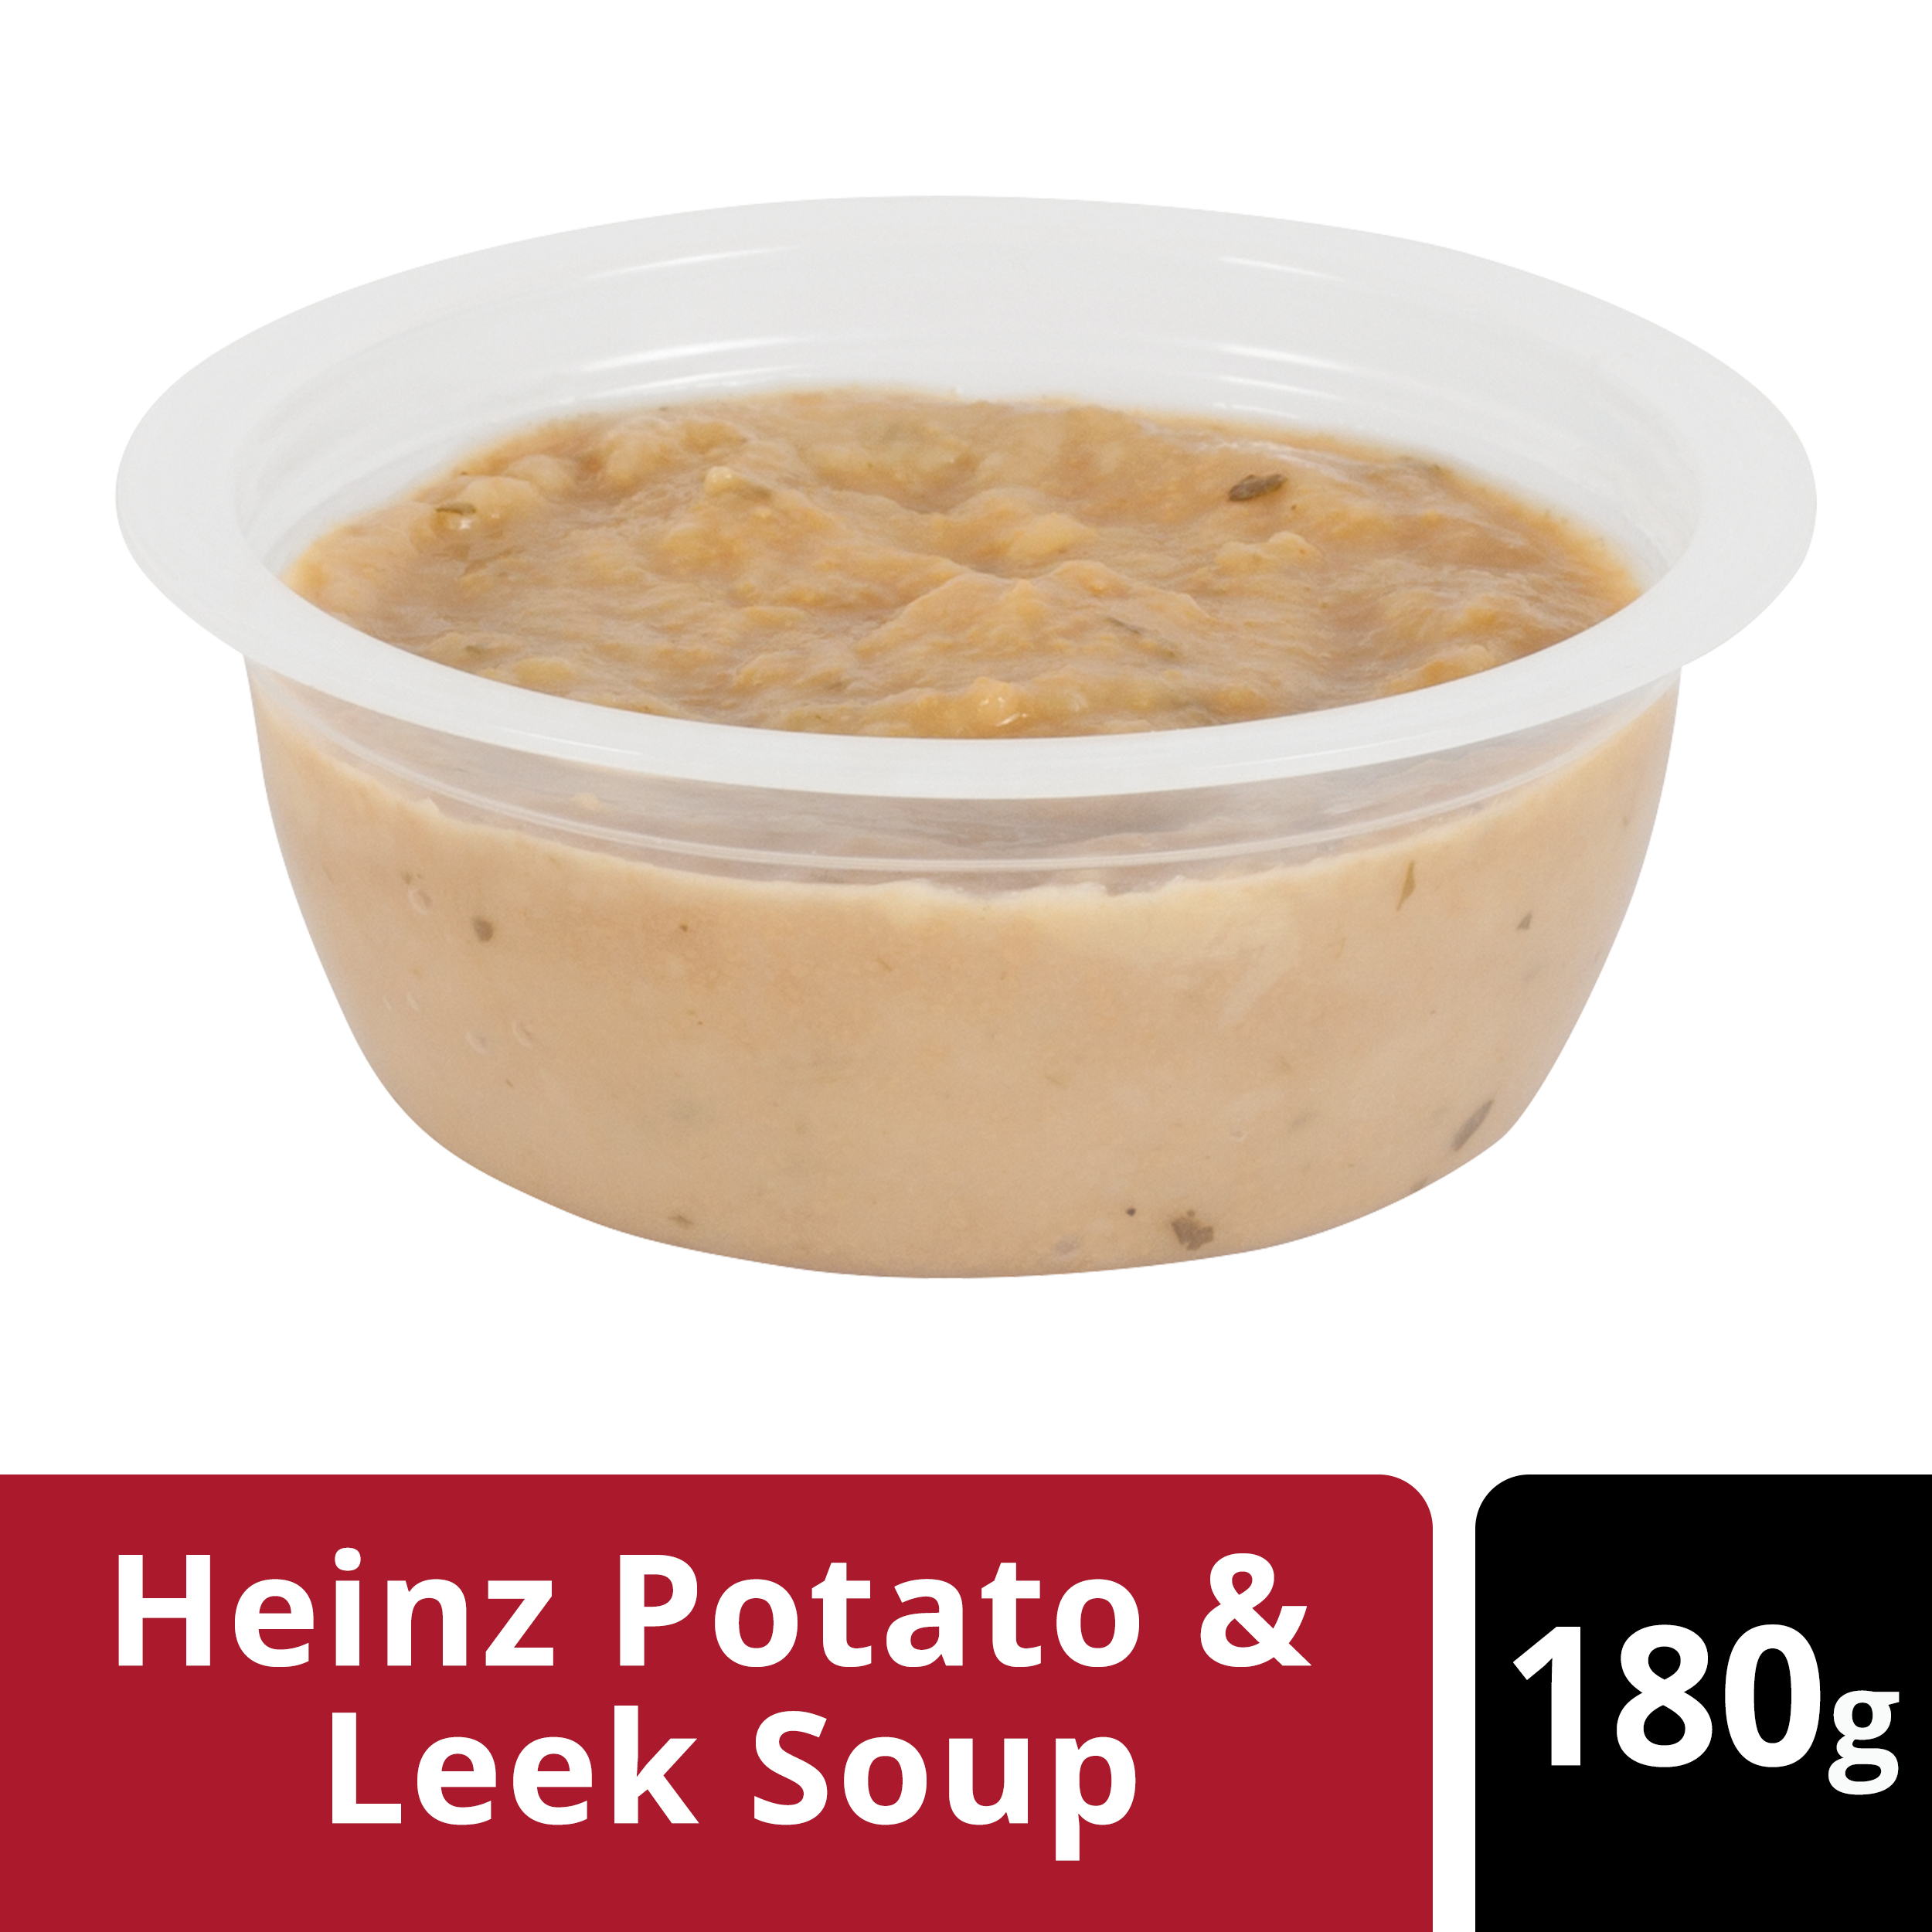  Heinz® Potato & Leek Soup Portion 180g 